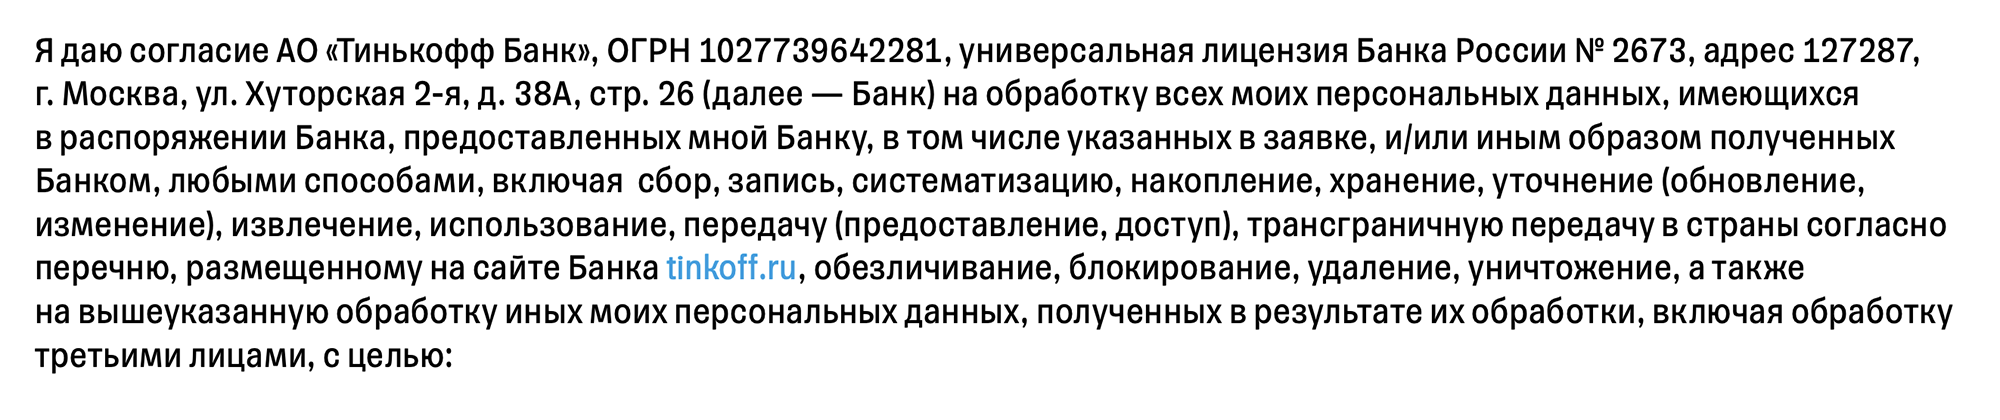 Например, в согласии на обработку персональных данных Тинькофф указывает разные способы работы с ними. Источник: tinkoff.ru